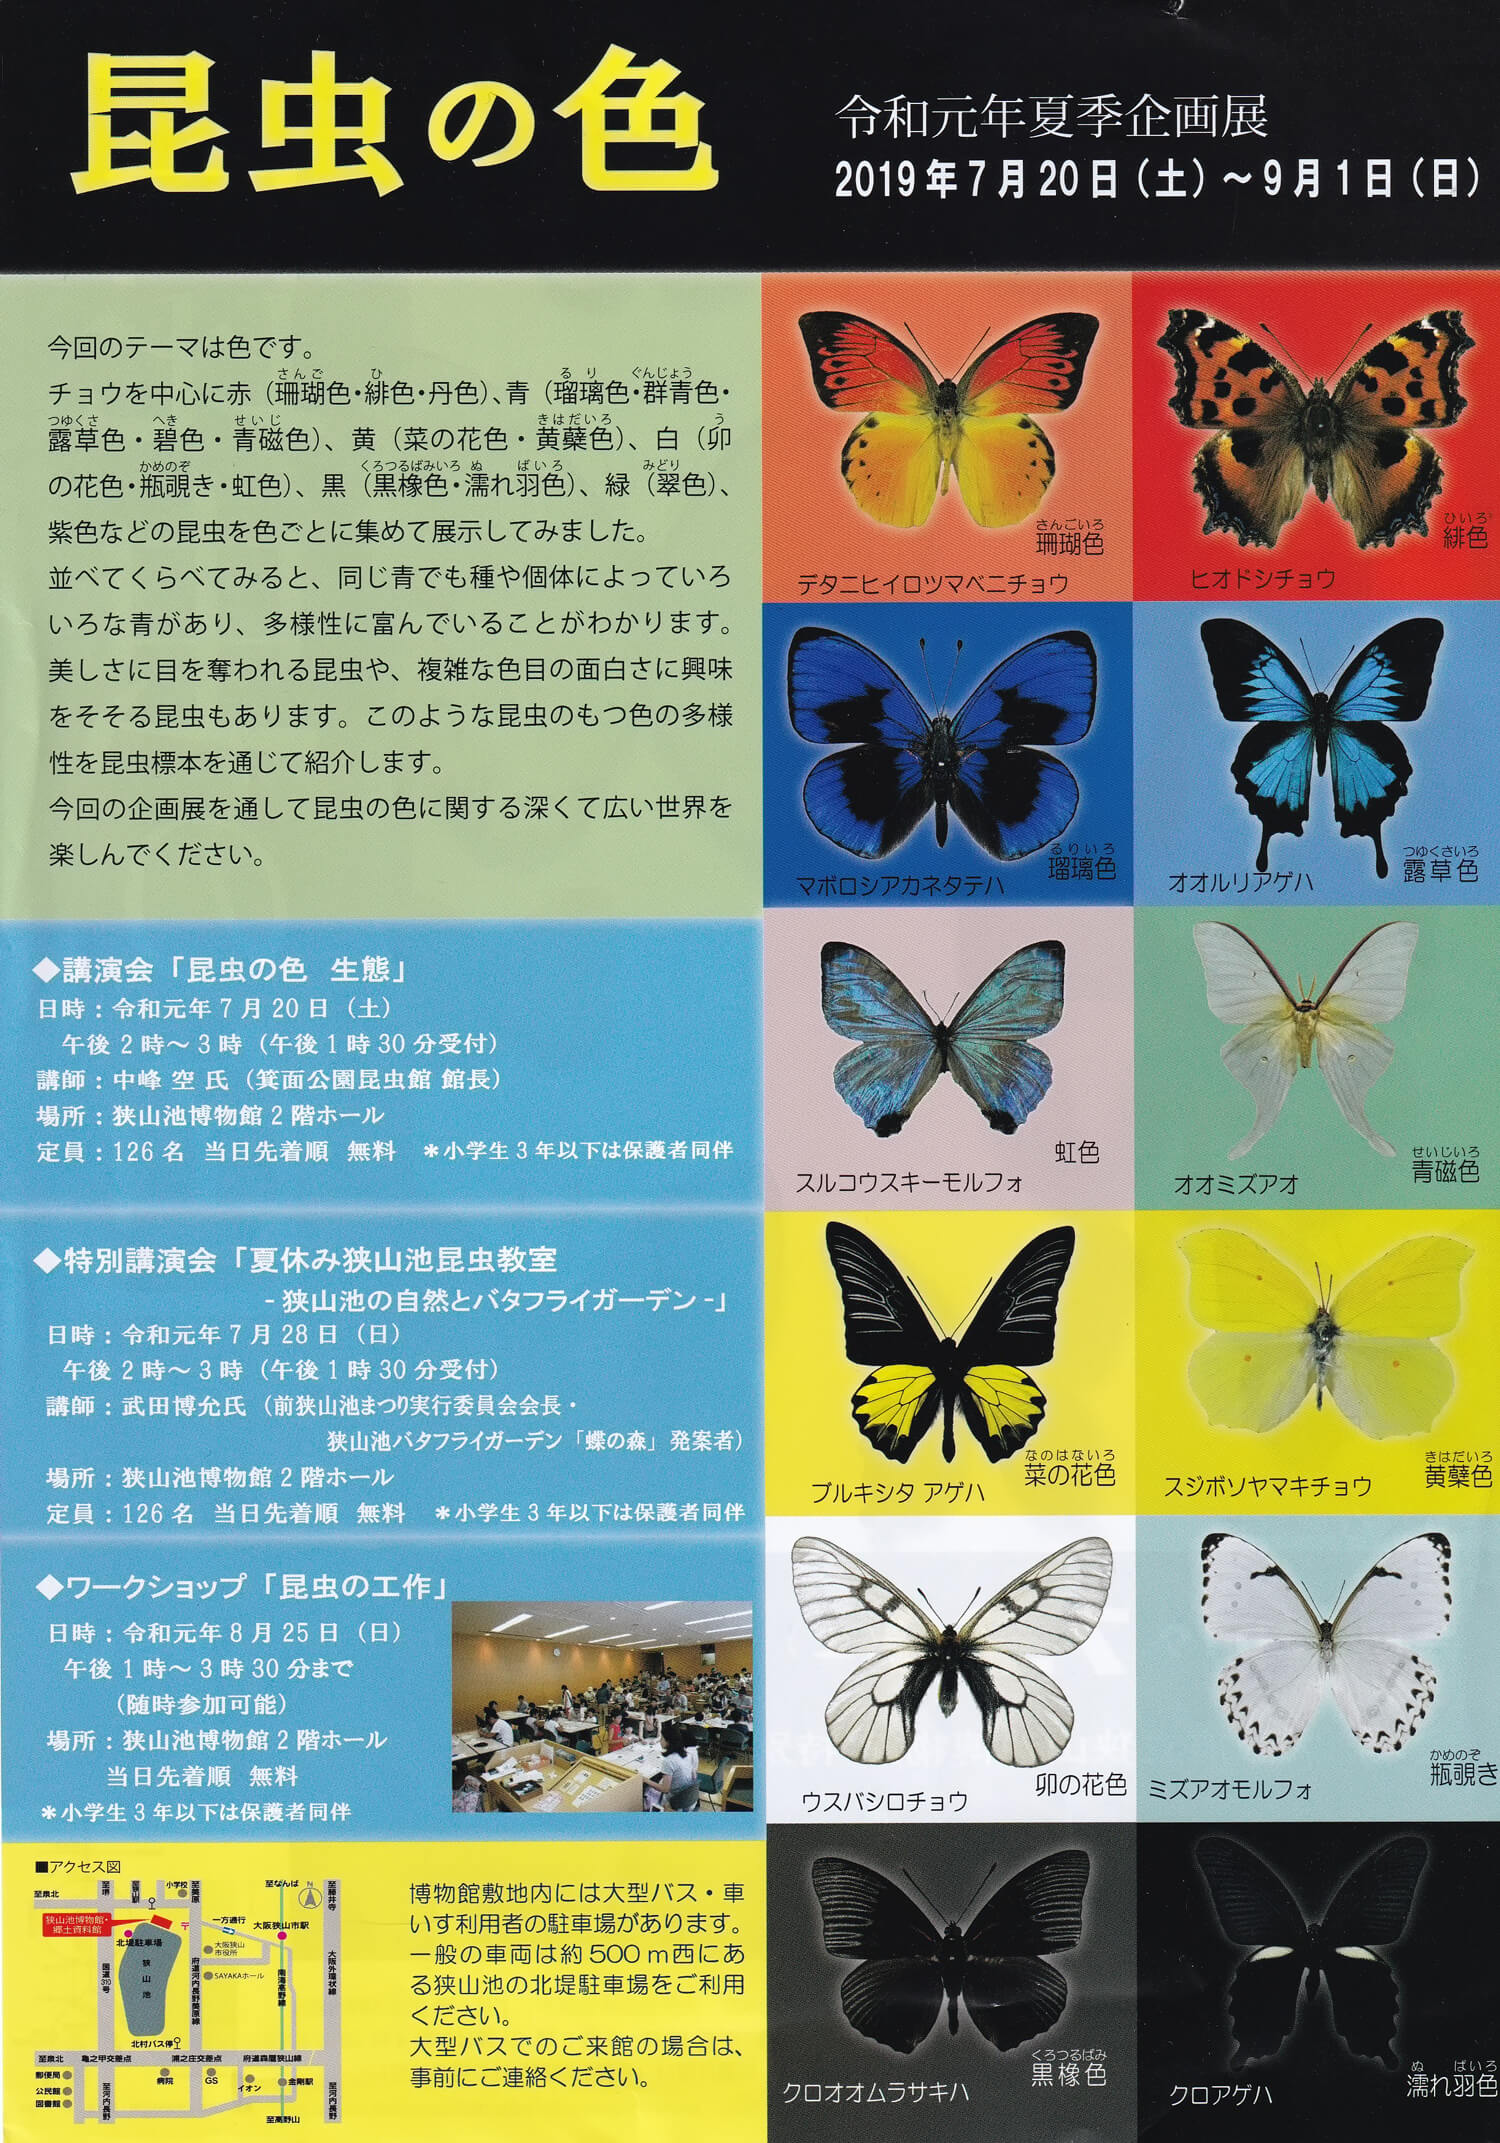 令和元年夏季企画展「昆虫の色」が狭山池博物館にて開催されます